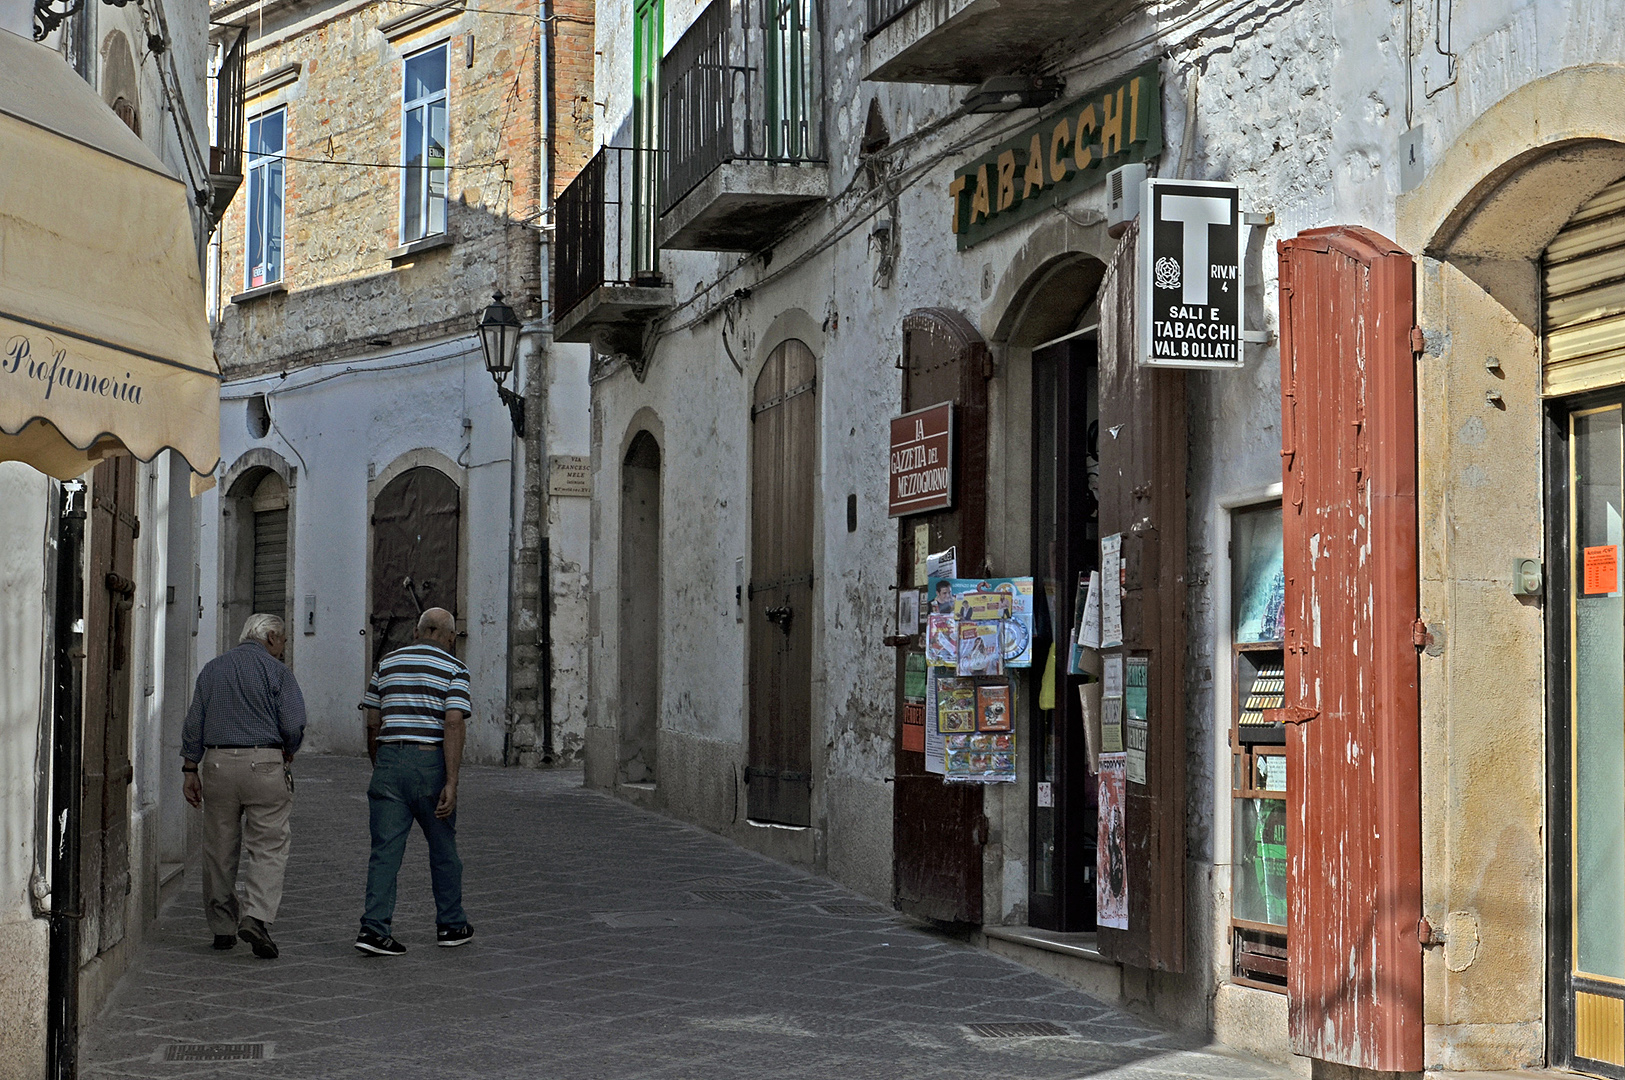 Tabakzaak in Bovino (Apulië, Italië); Tobacconist in Bovino (Puglia, Italy)